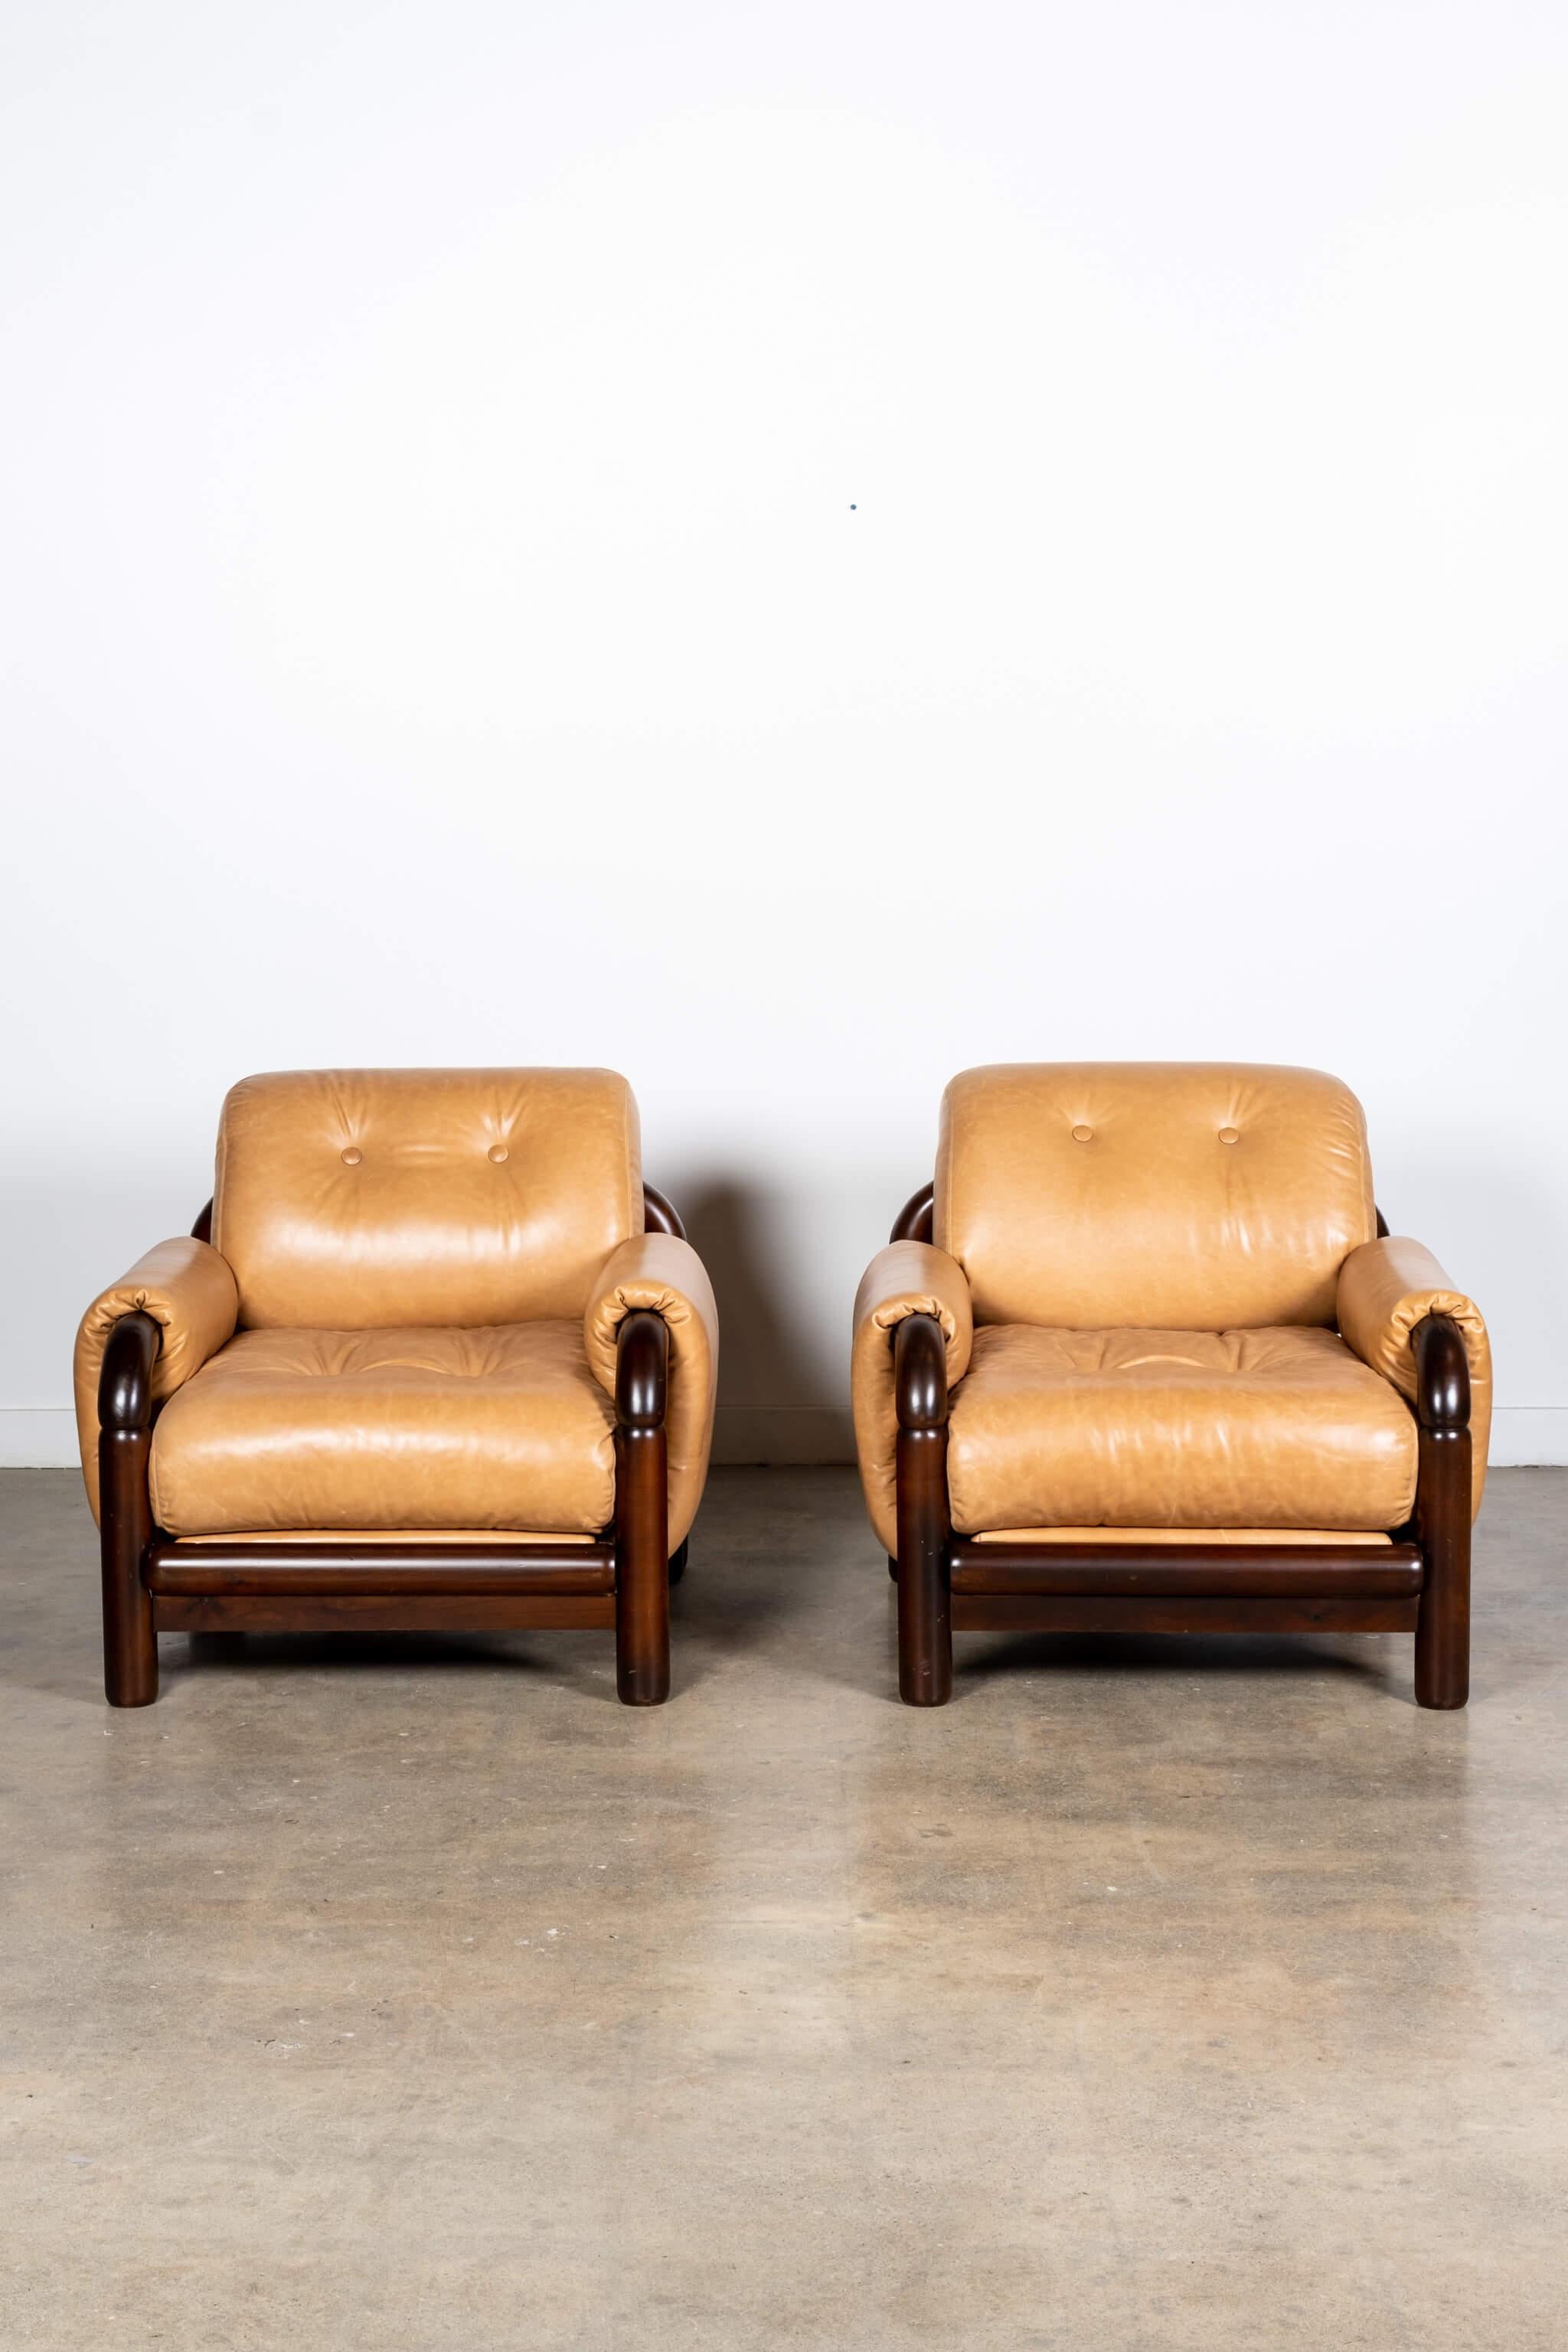 Le cuir caramel souple enveloppe et se courbe sur le cadre en bois tubulaire de ces fauteuils à la fois solides et sophistiqués qui attirent l'attention sous tous les angles. Production présumée des années 1970, non marquée. Bois brésilien et cuir.